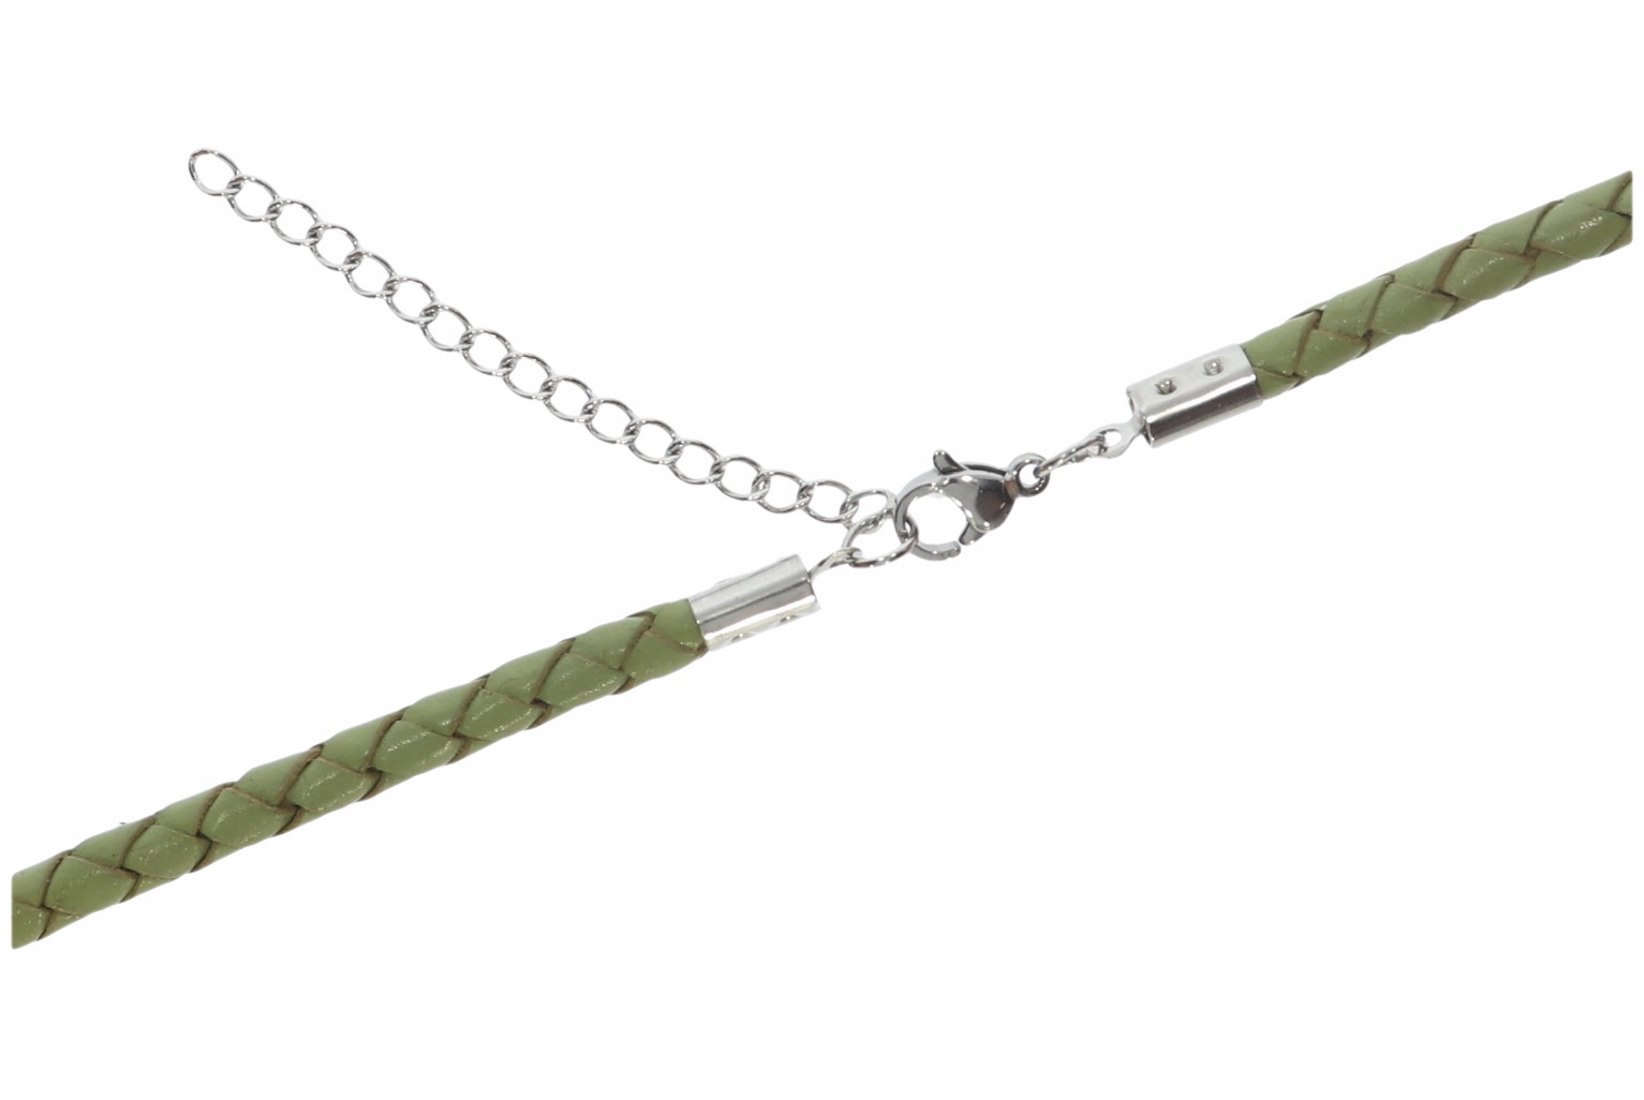 Bola Lederband grün 4mm Halskette & Silber Karabiner Größe 38-100cm - LA03